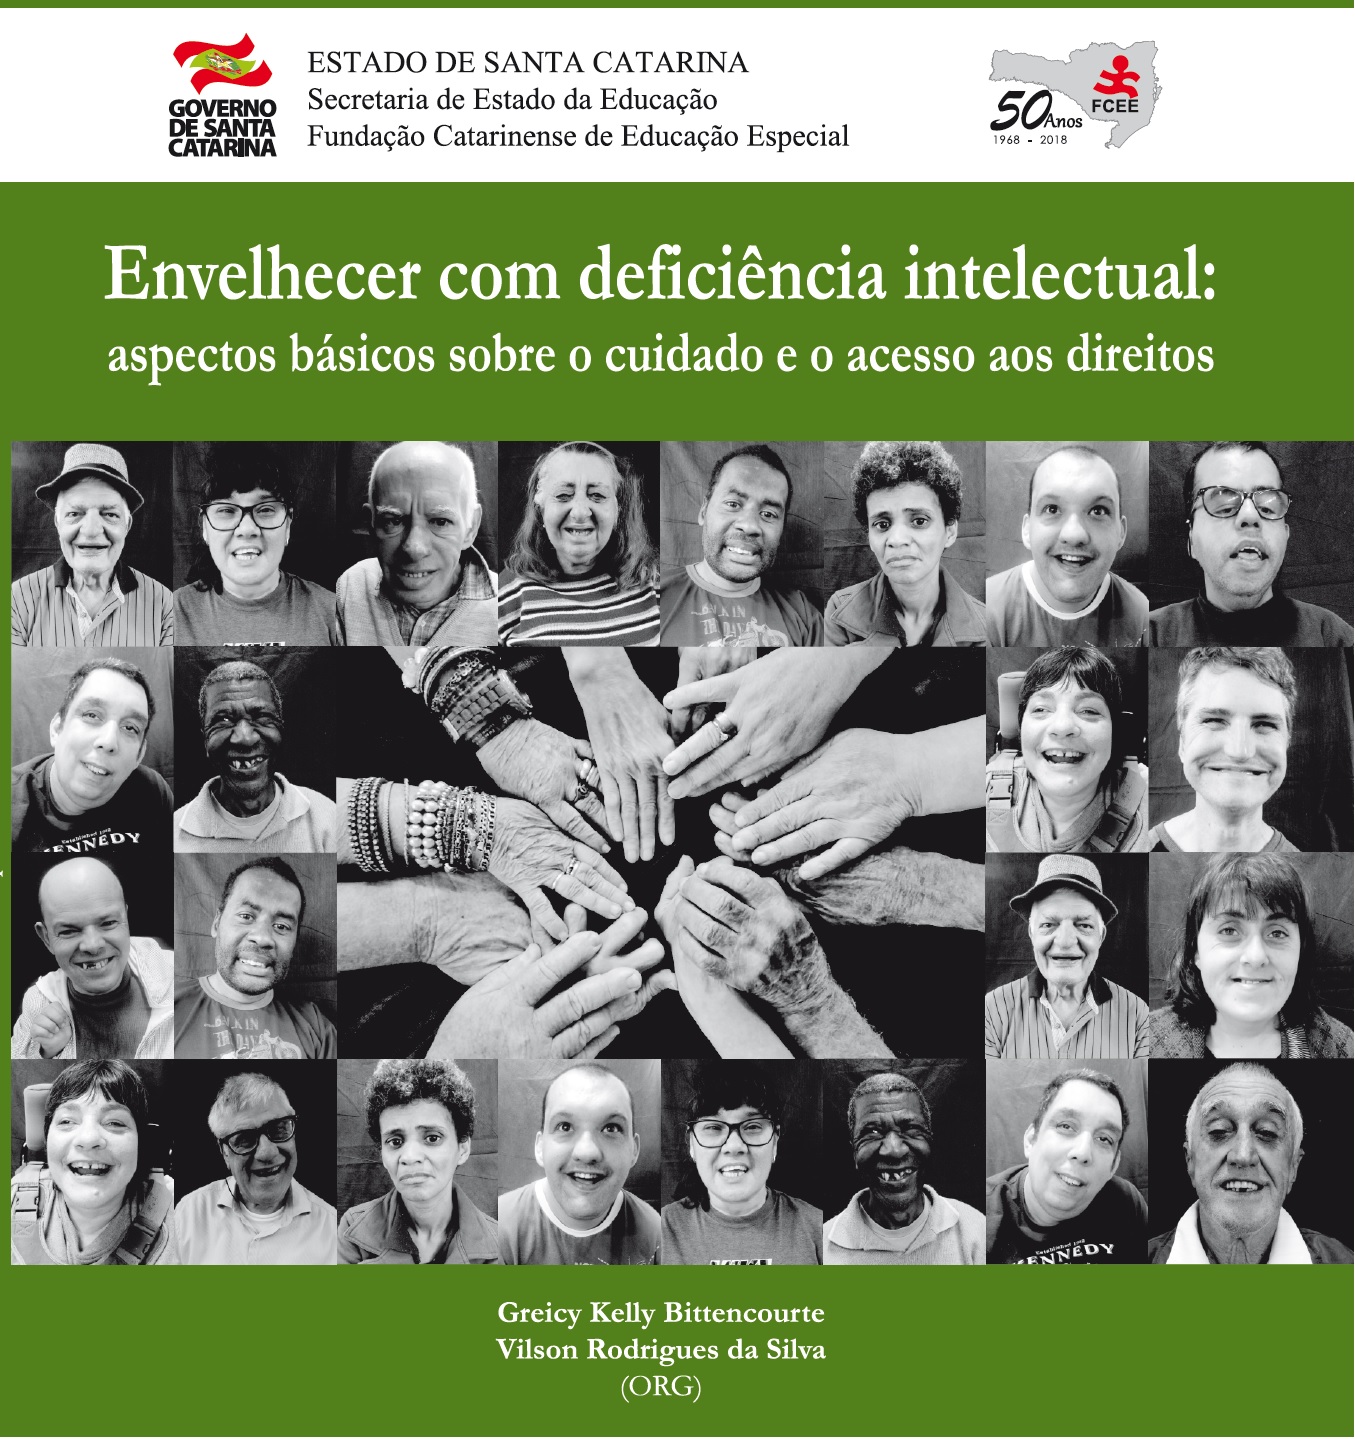 Educandos da FCEE na capa da cartilha sobre Envelhecimento e Deficiência Intelectual